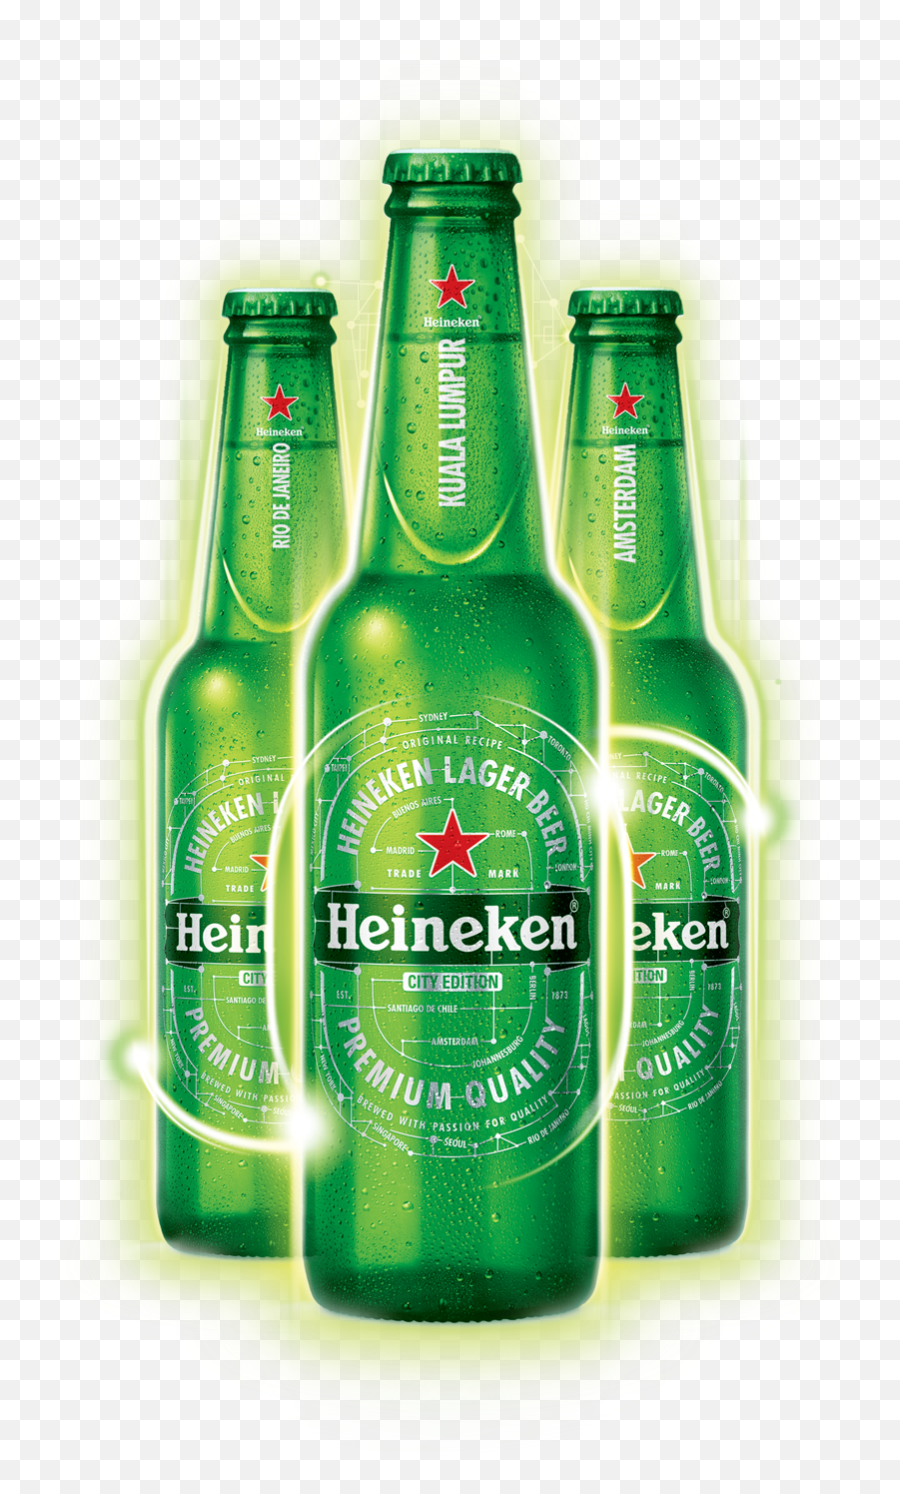 Download Free Png Heineken Bottles - Transparent Background Heineken Bottle Png,Heineken Png